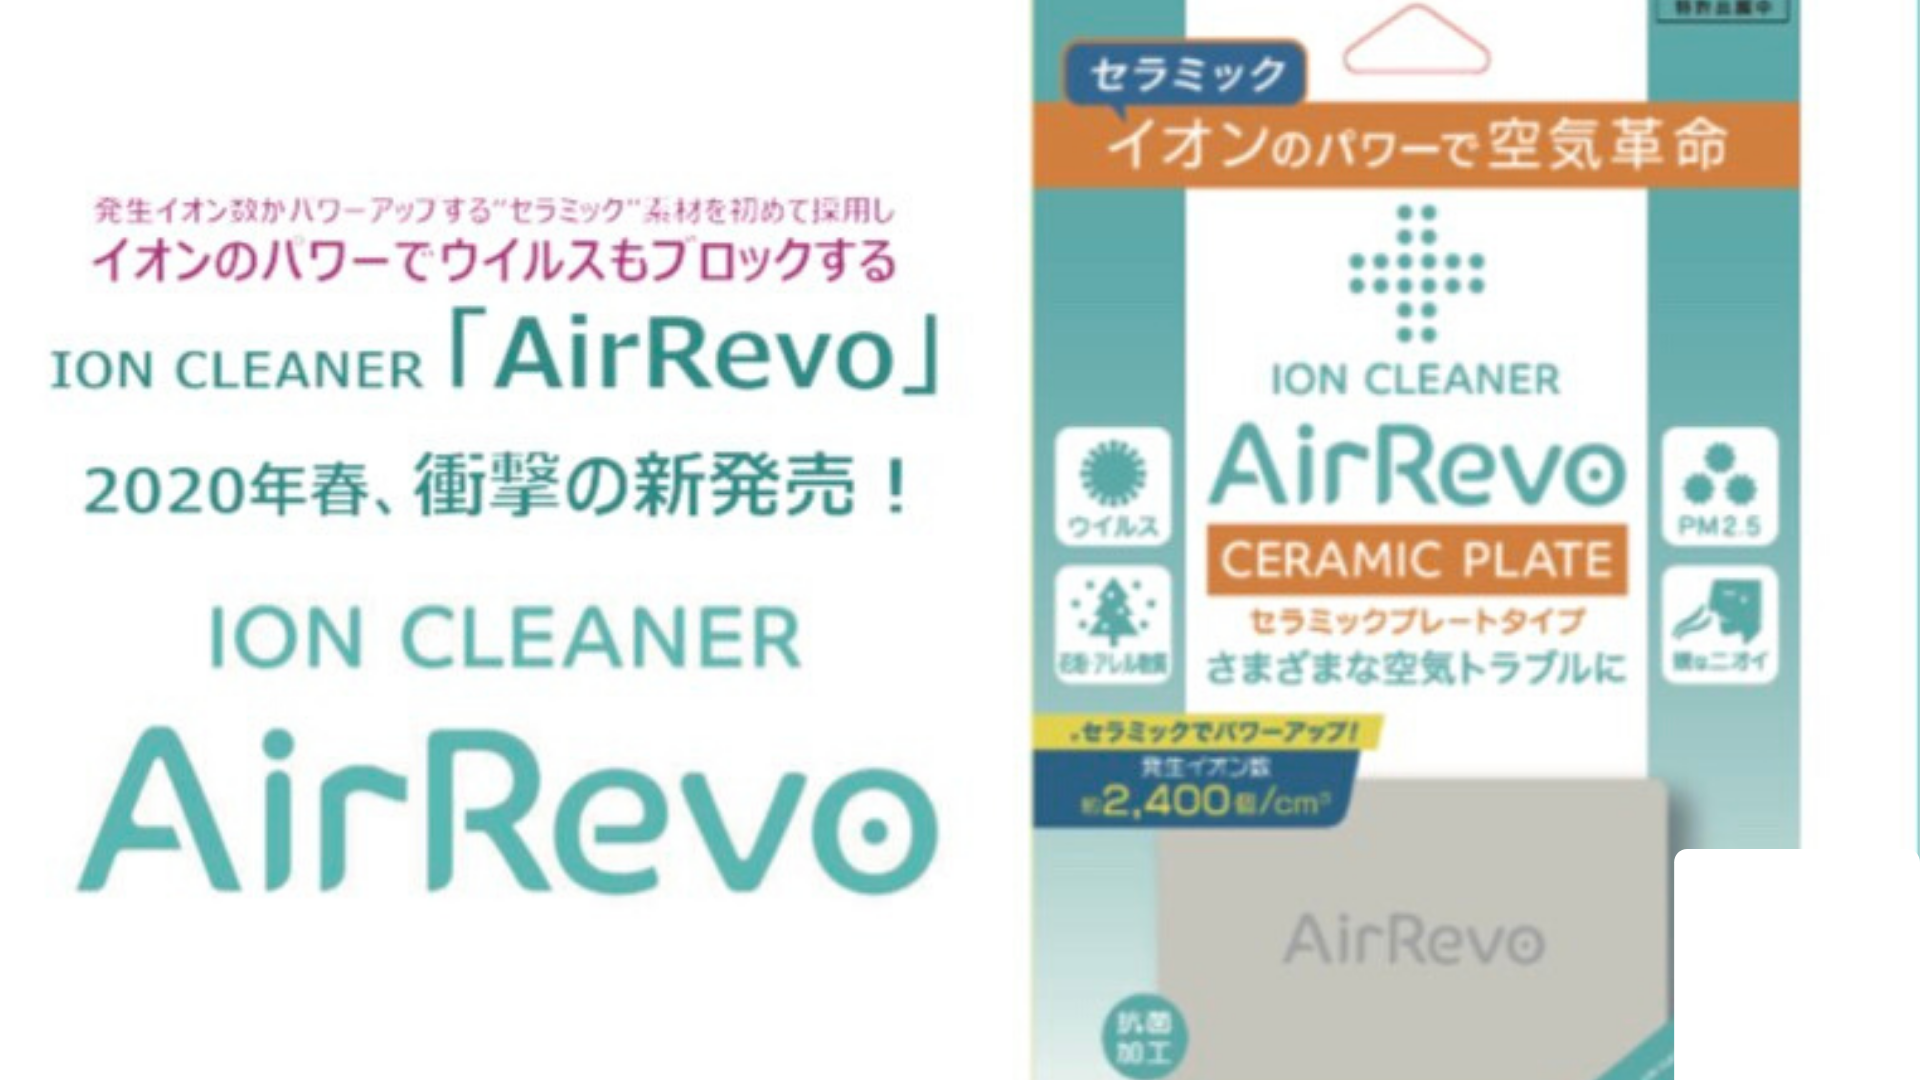 Air Revo